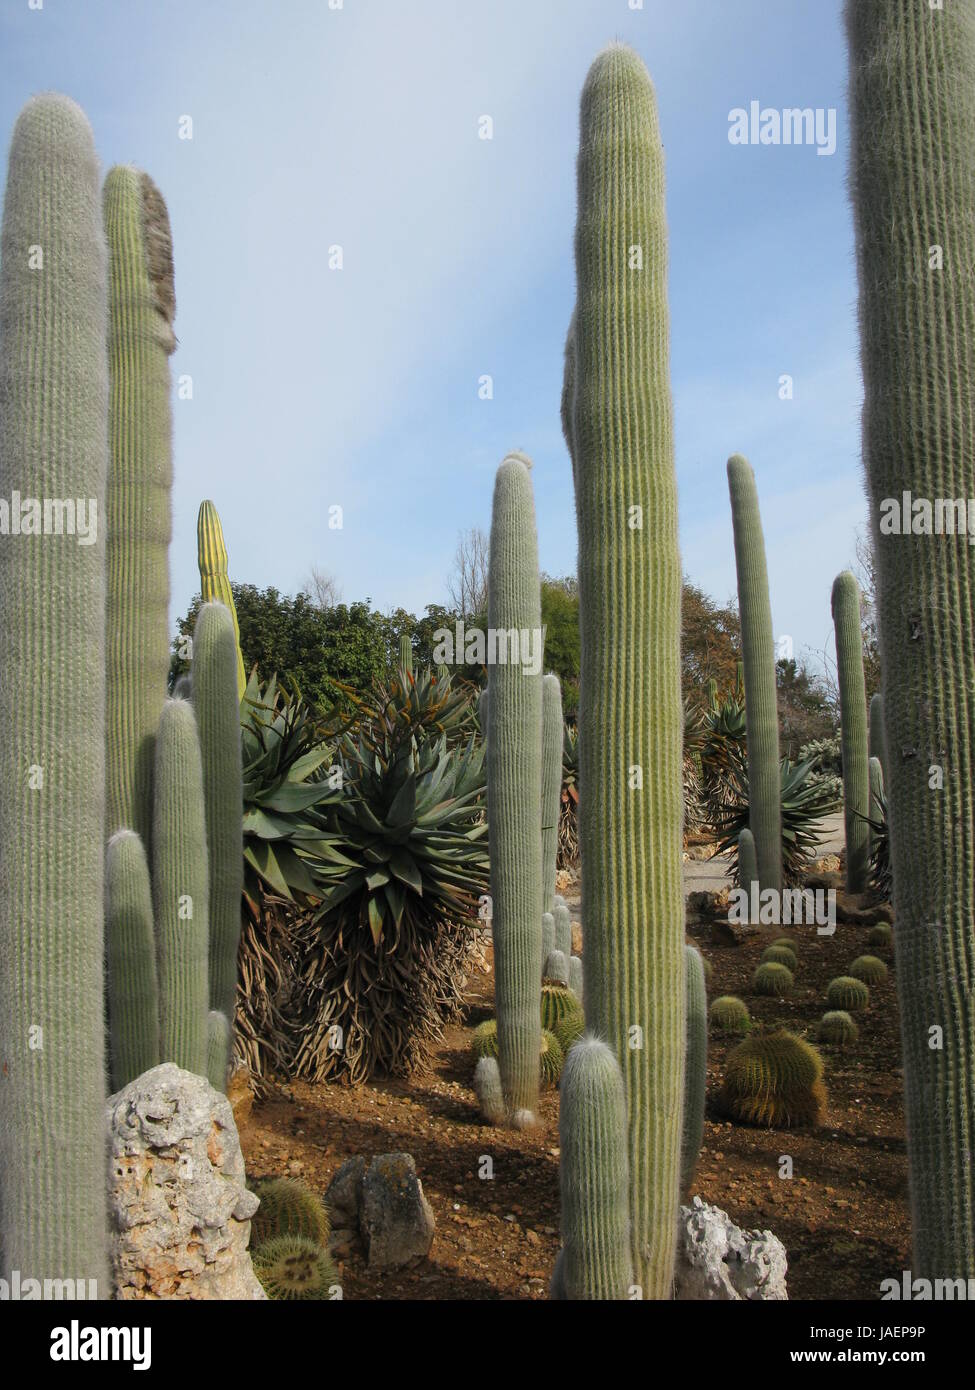 cactus garden Stock Photo